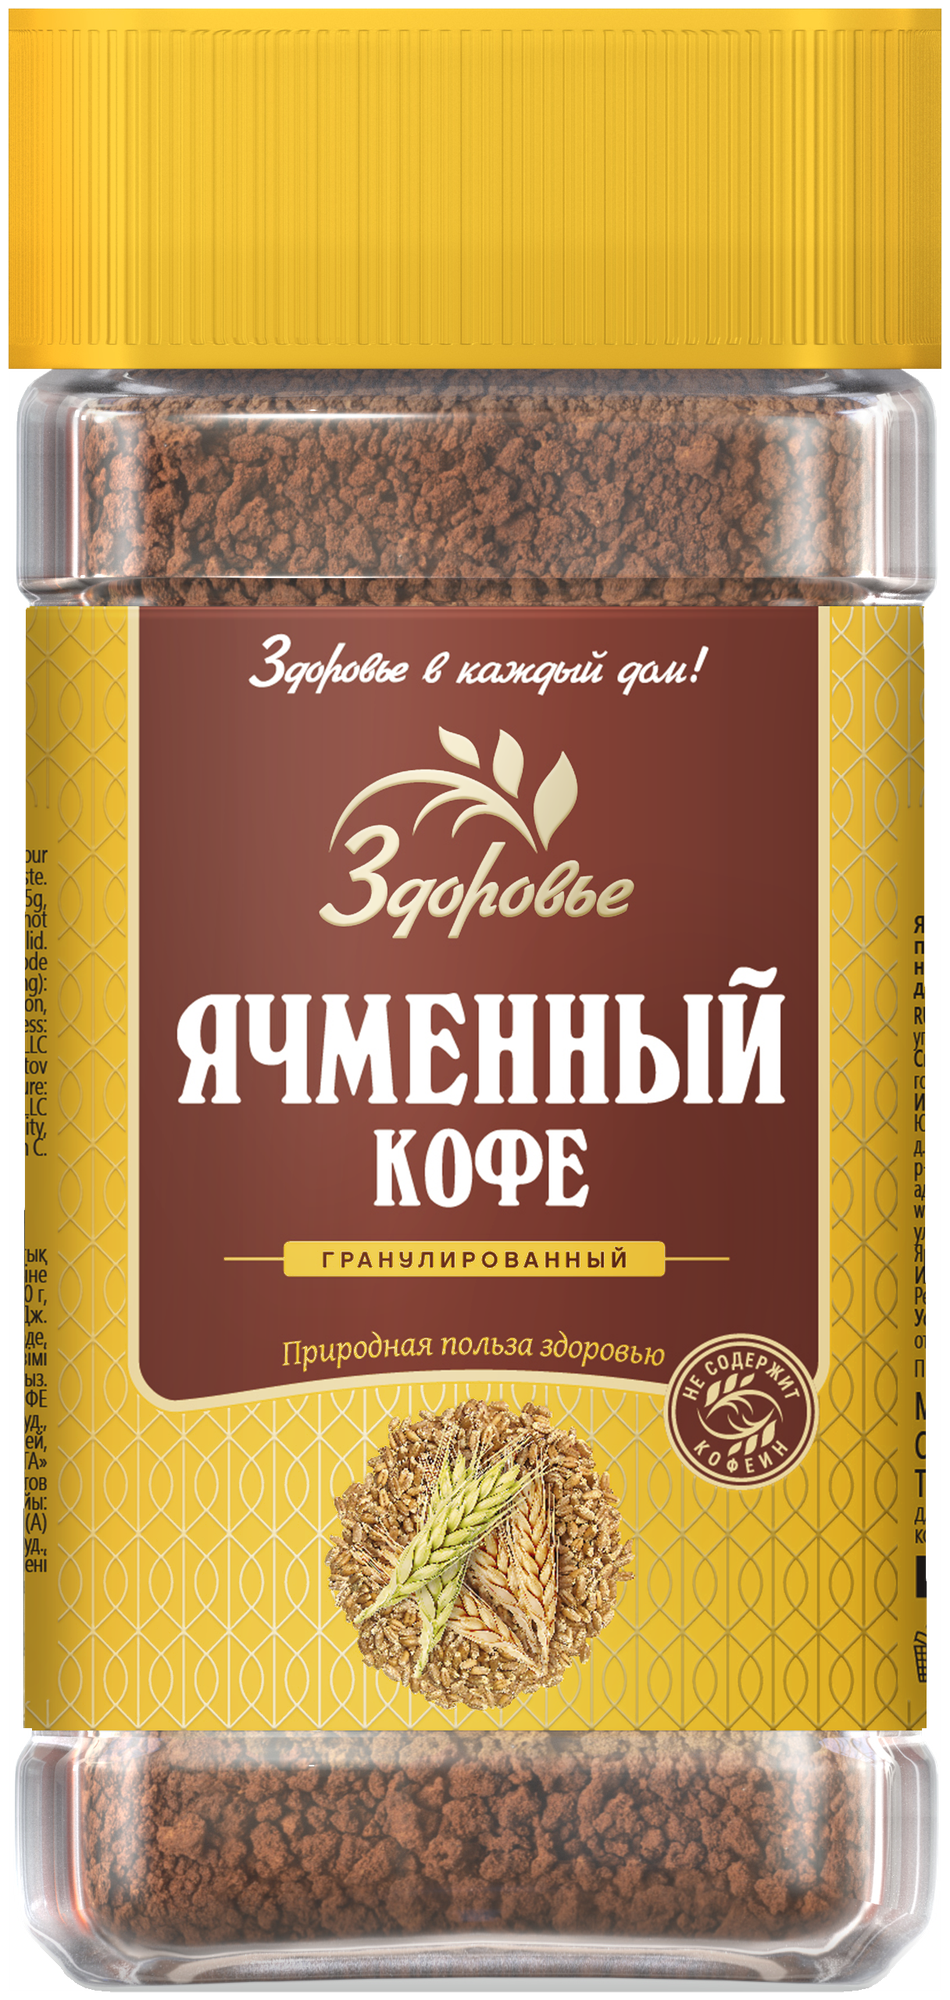 Ячменный кофе гранула Здоровье СтБ 75грамм 1шт